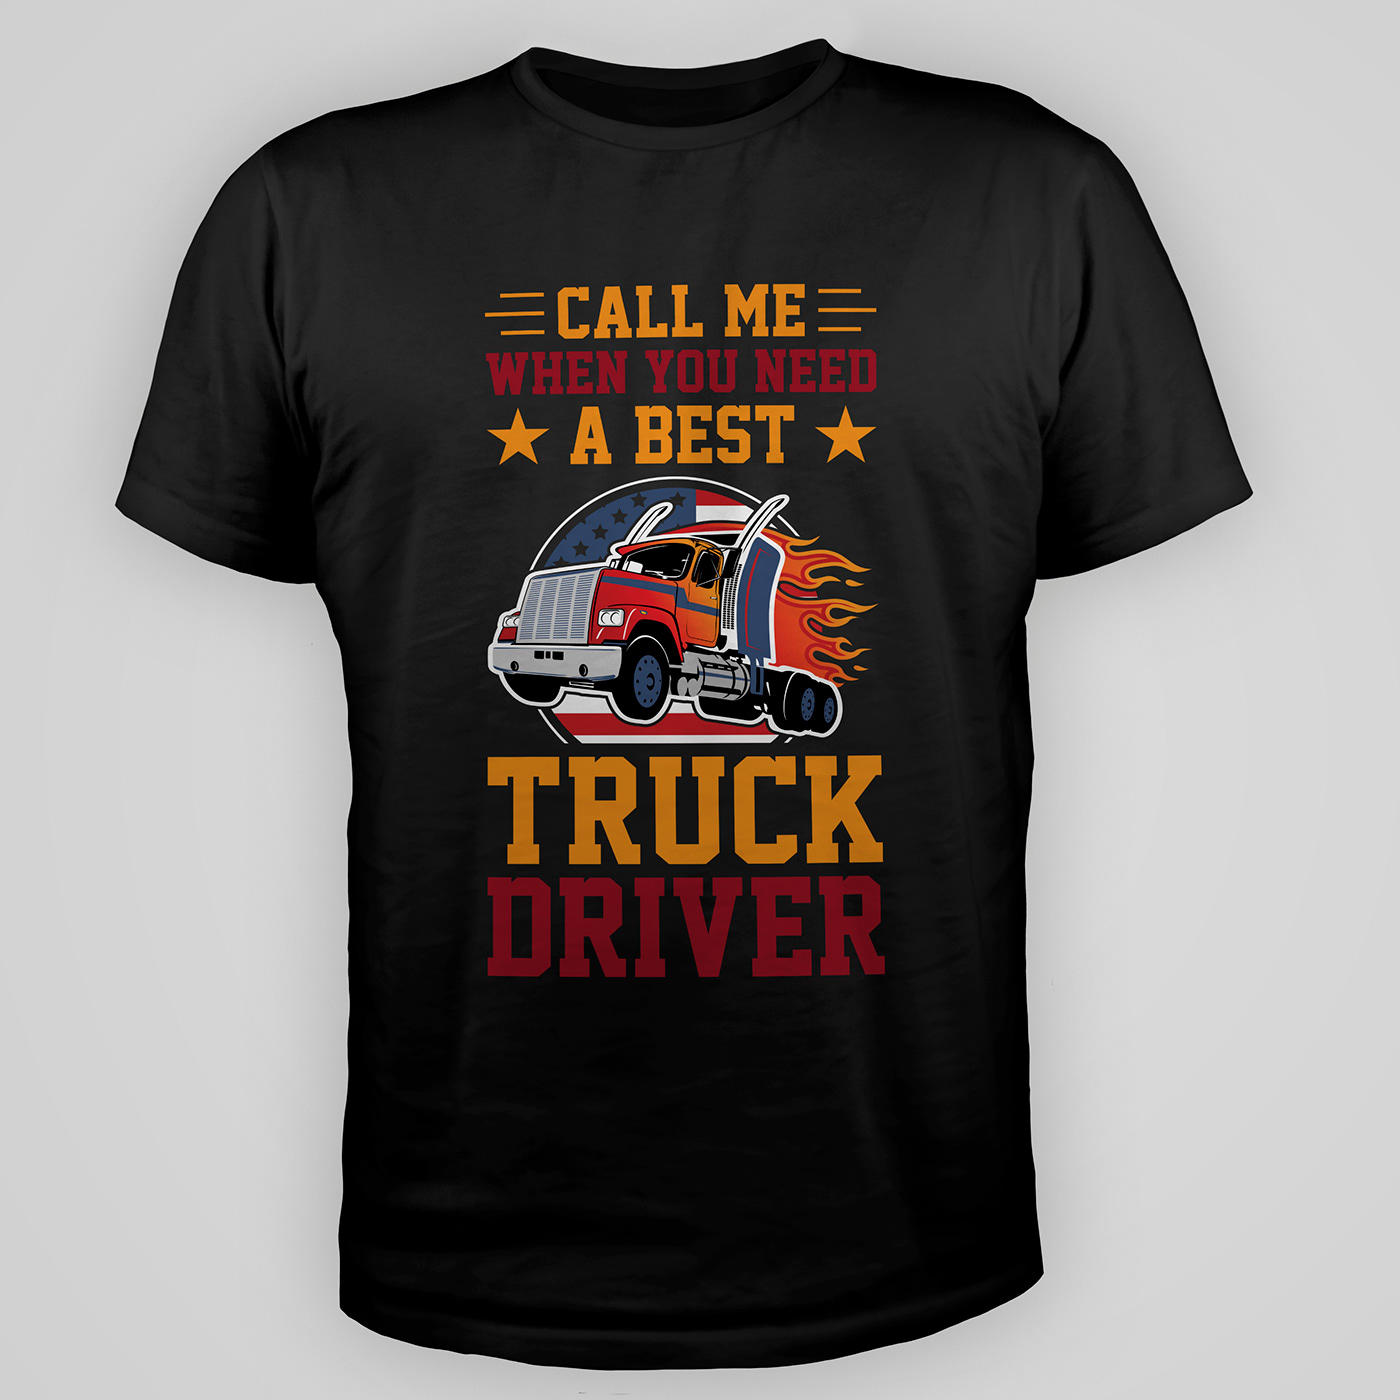 Truck driver t-shirt design.